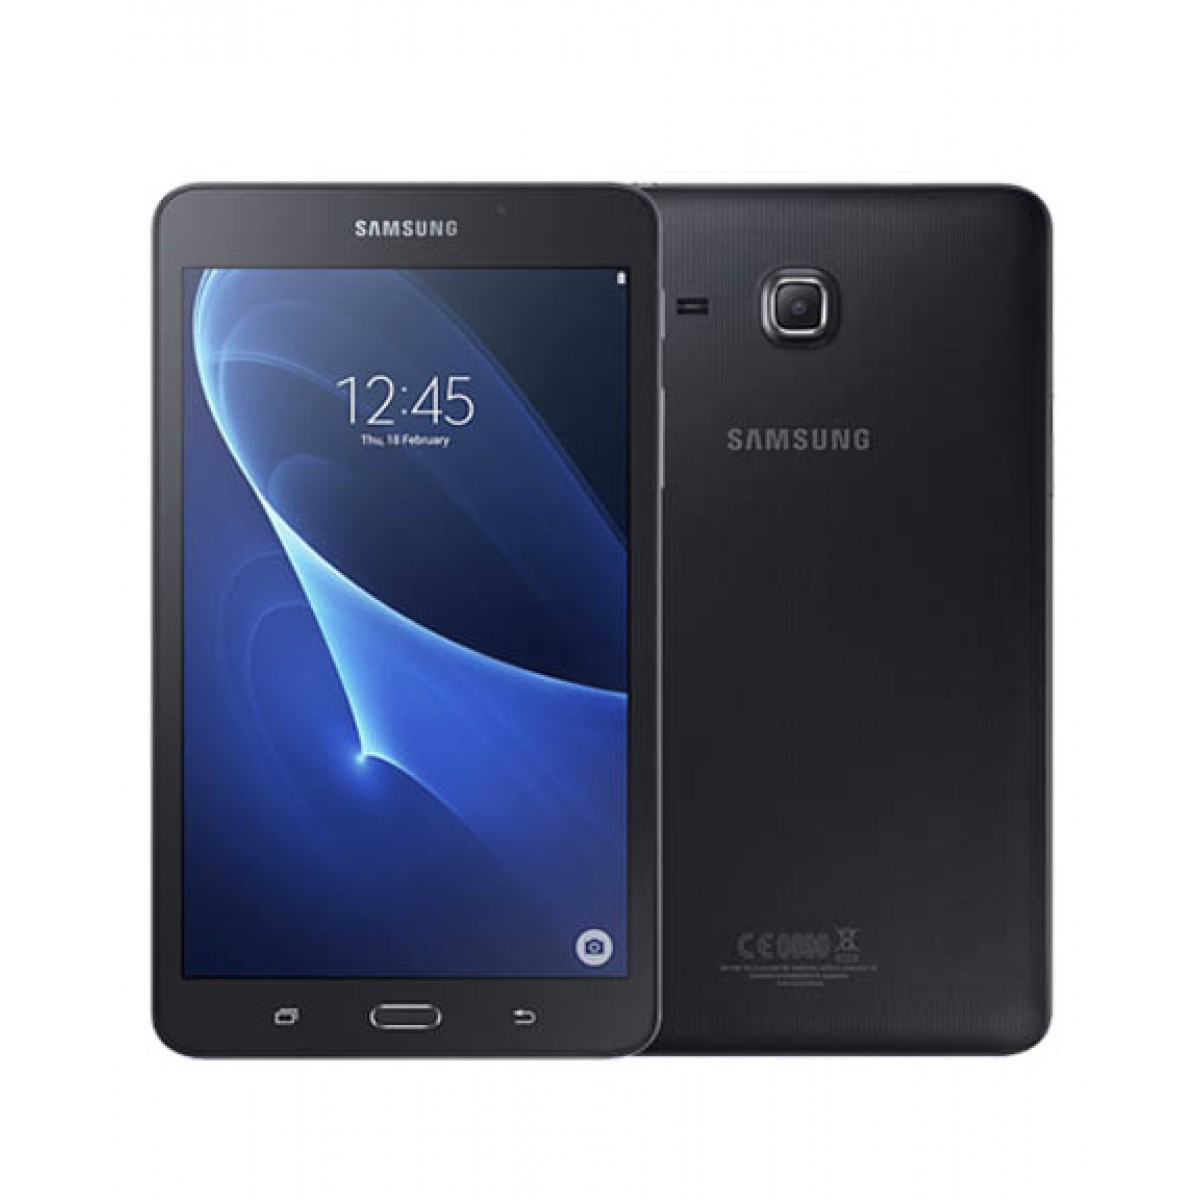 Samsung Galaxy Tab T280 Wi-Fi | GTS - Amman Jordan | GTS - Amman Jordan